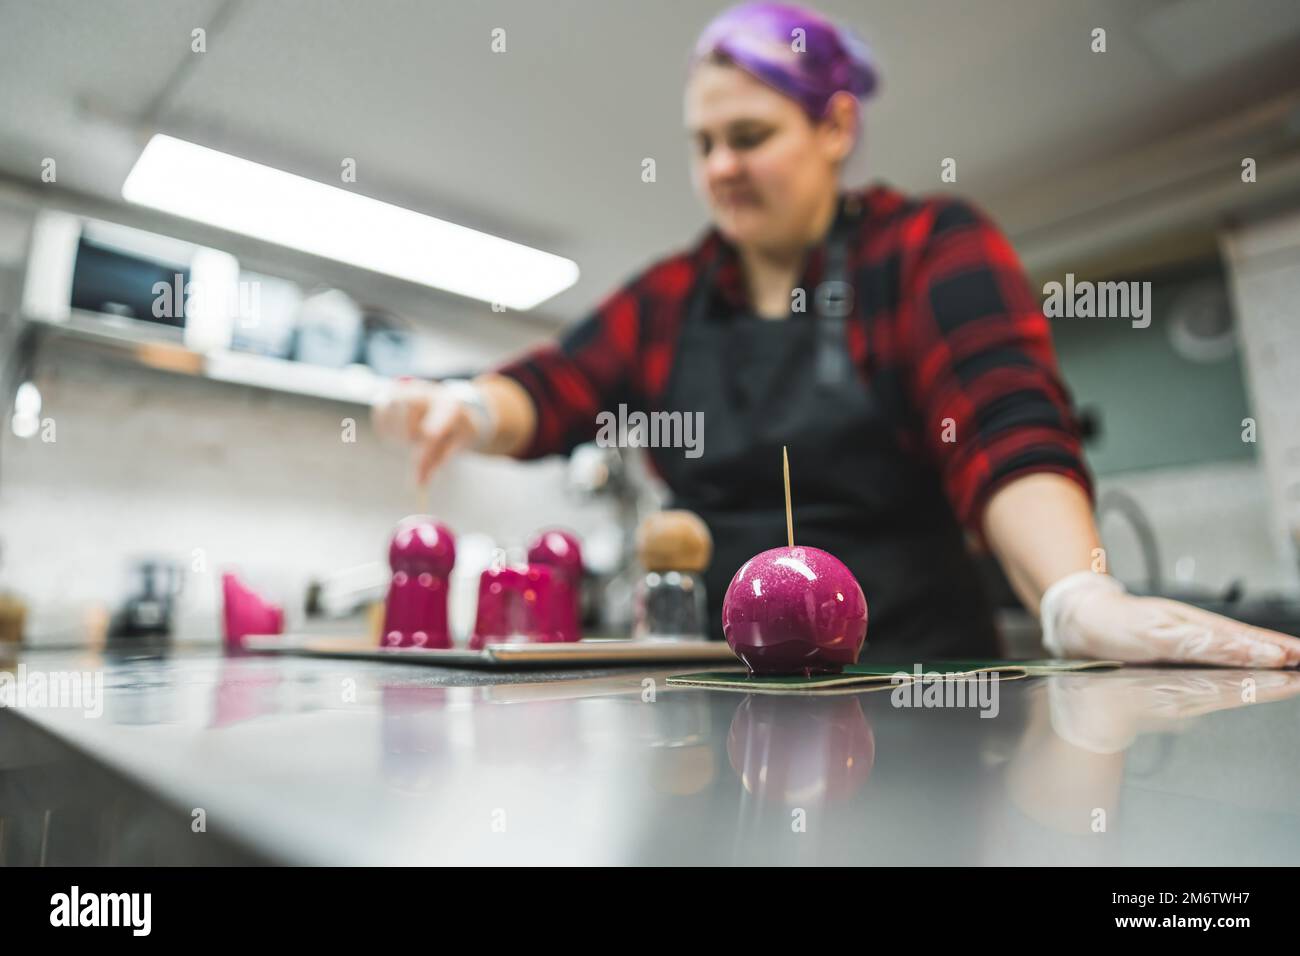 Interno cucina pasticceria chef. Processo di decorazione. Donna caucasica che ricopre cupcakes e praline in glassa rosa. Foto di alta qualità Foto Stock